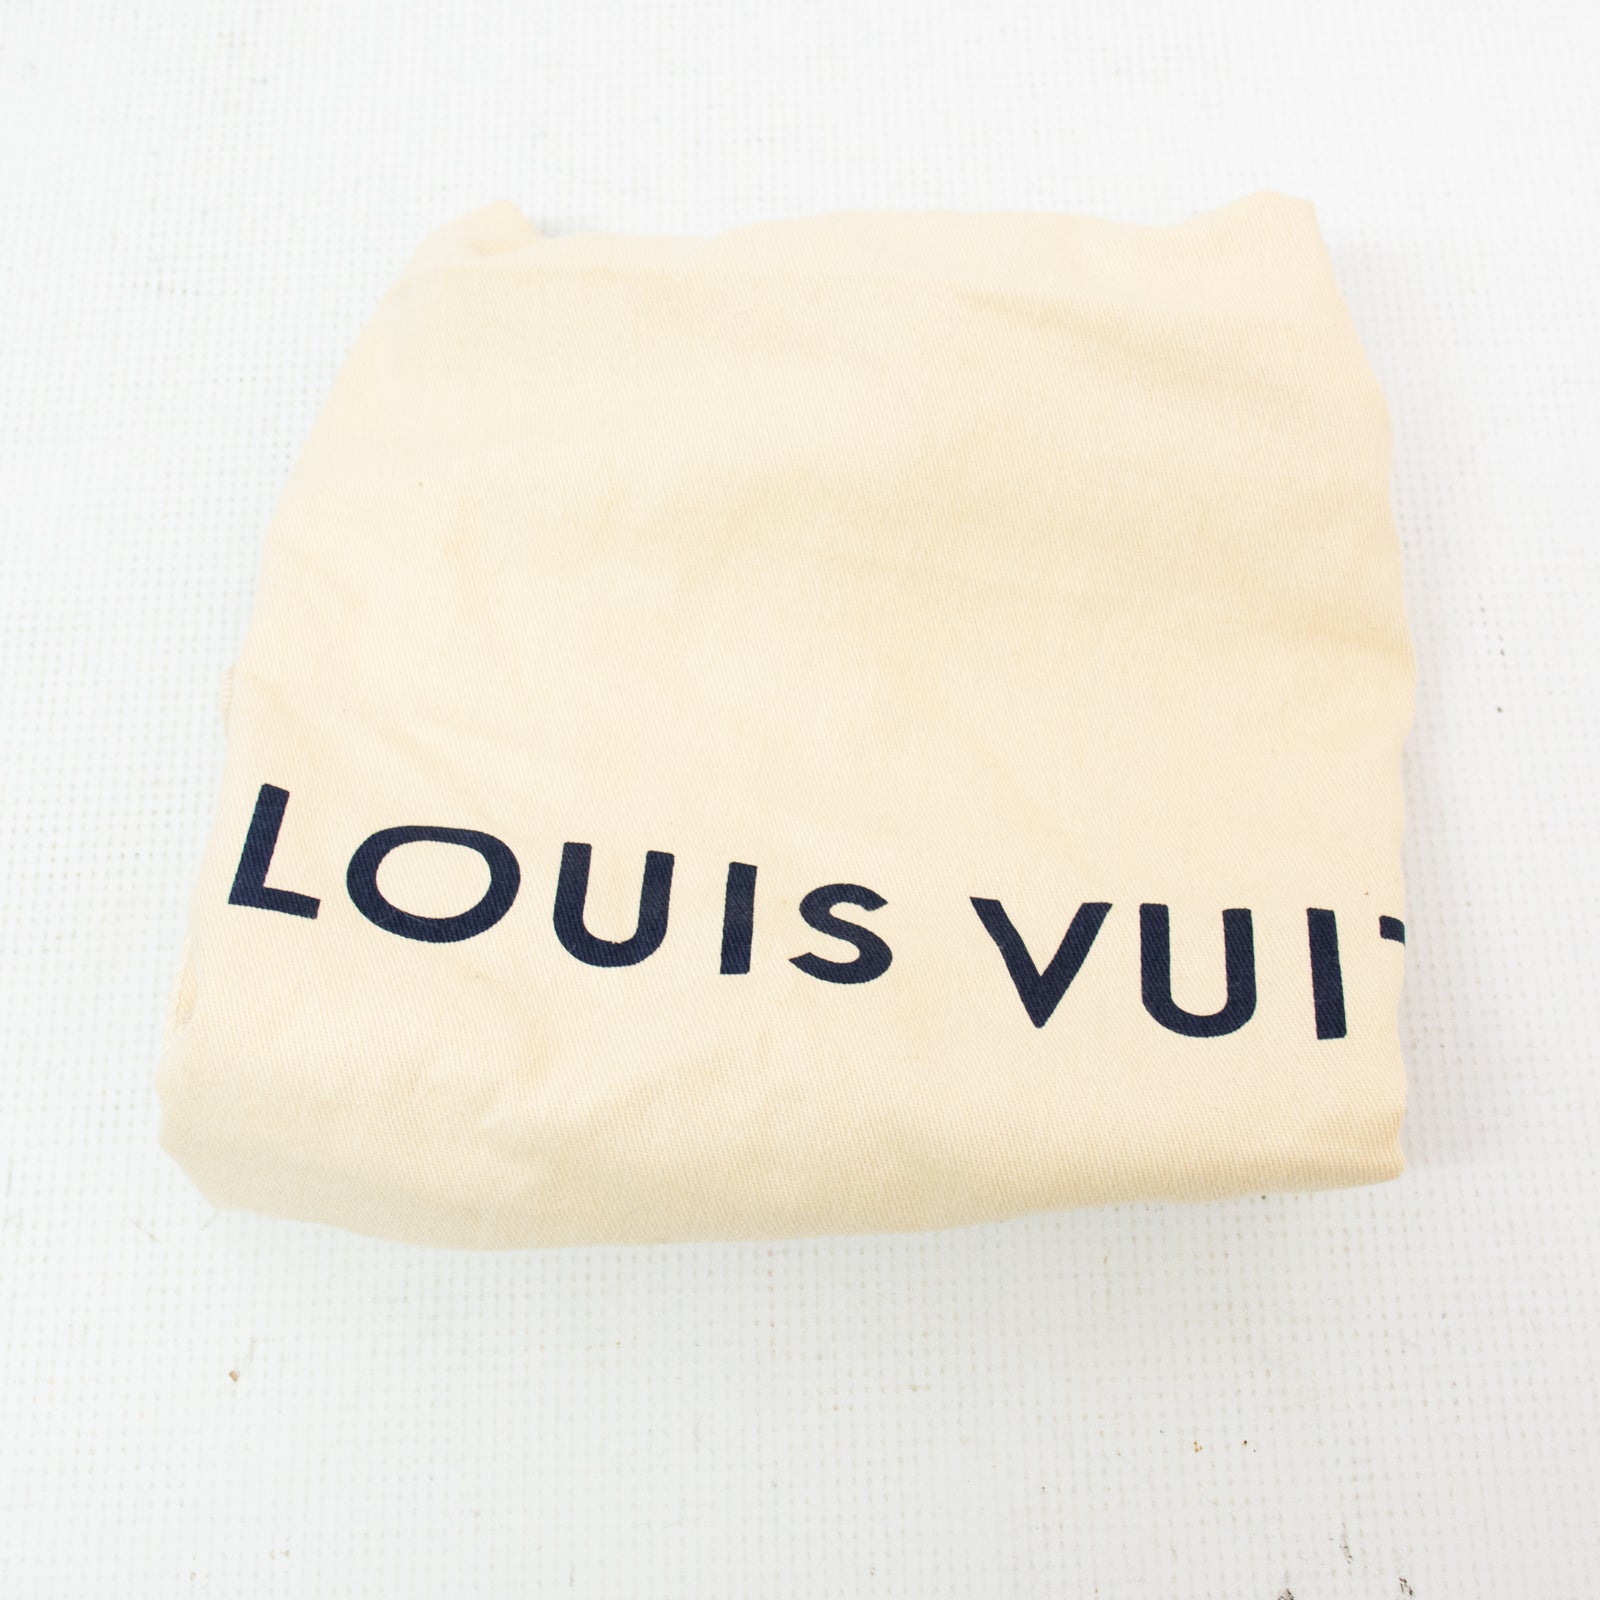 Louis Vuitton, Bags, 2 Louis Vuitton Dust Bags Drawstring 1 Flap Style